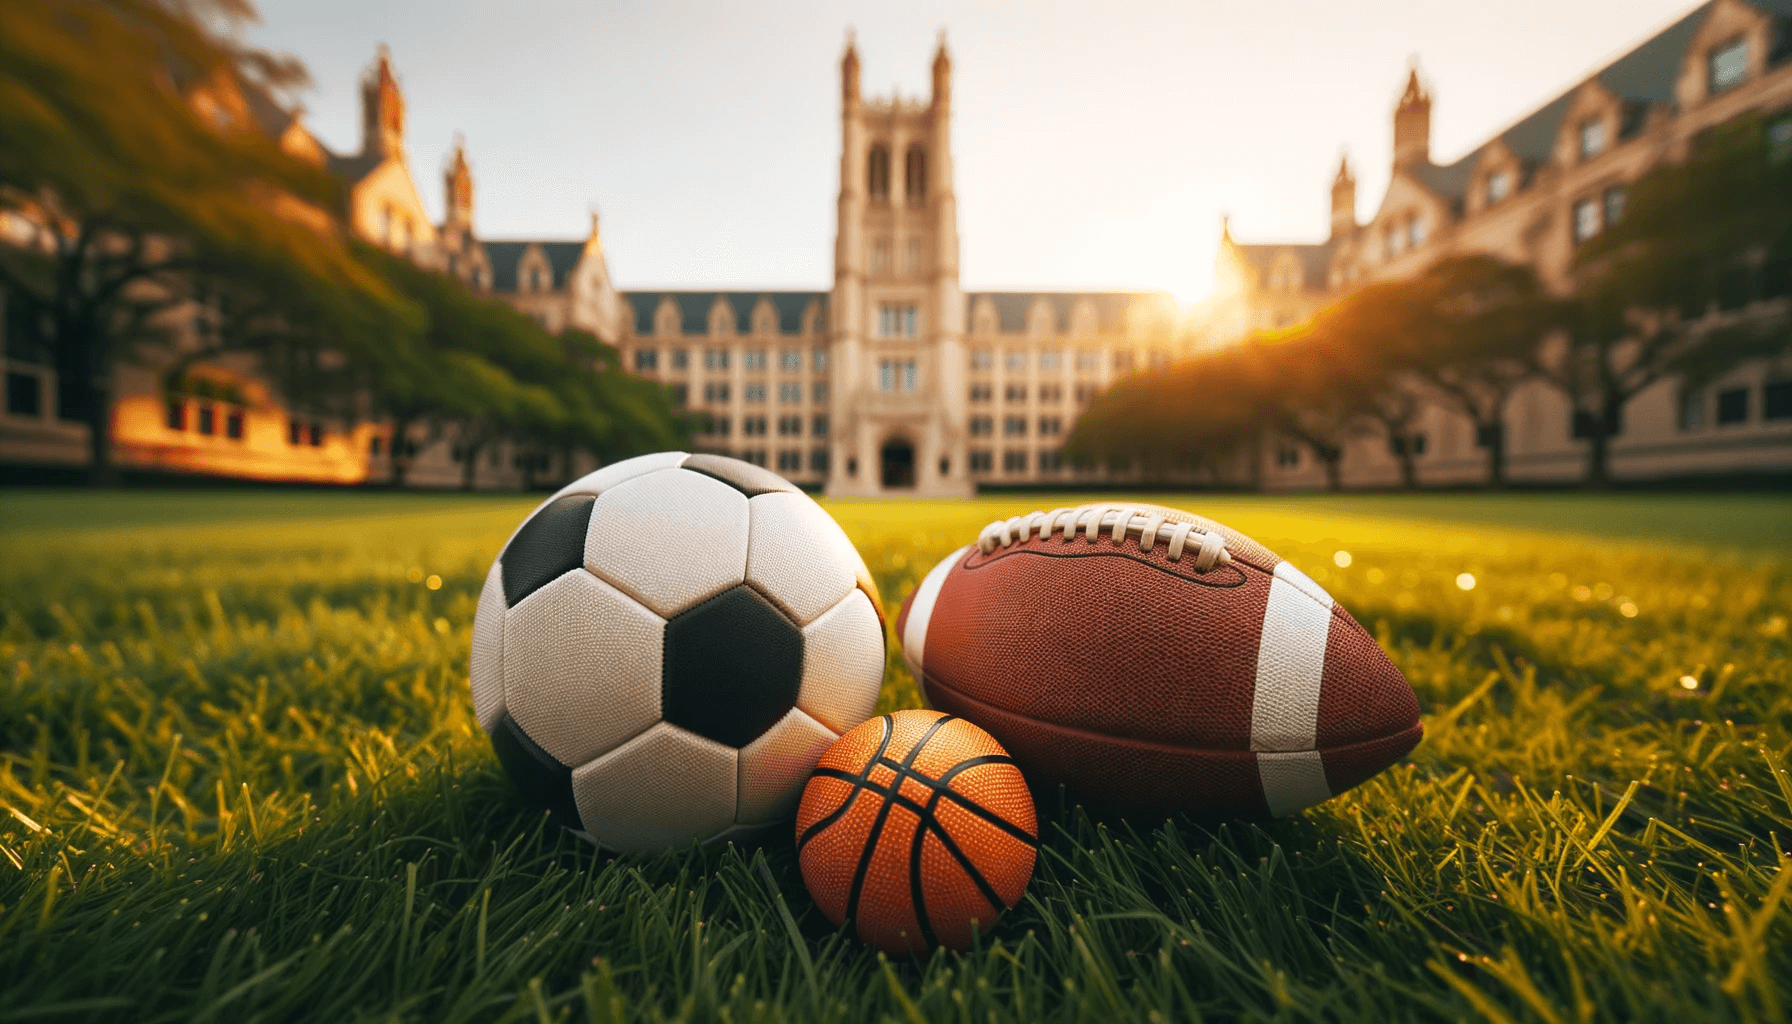 Universiteitscampus in de VS op de achtergrond, met een groen grasveld ervoor. Op de voorgrond liggen drie sportballen: een basketbal, voetbal en American football, die de focus op atletische beurzen voor internationale studenten symboliseren.